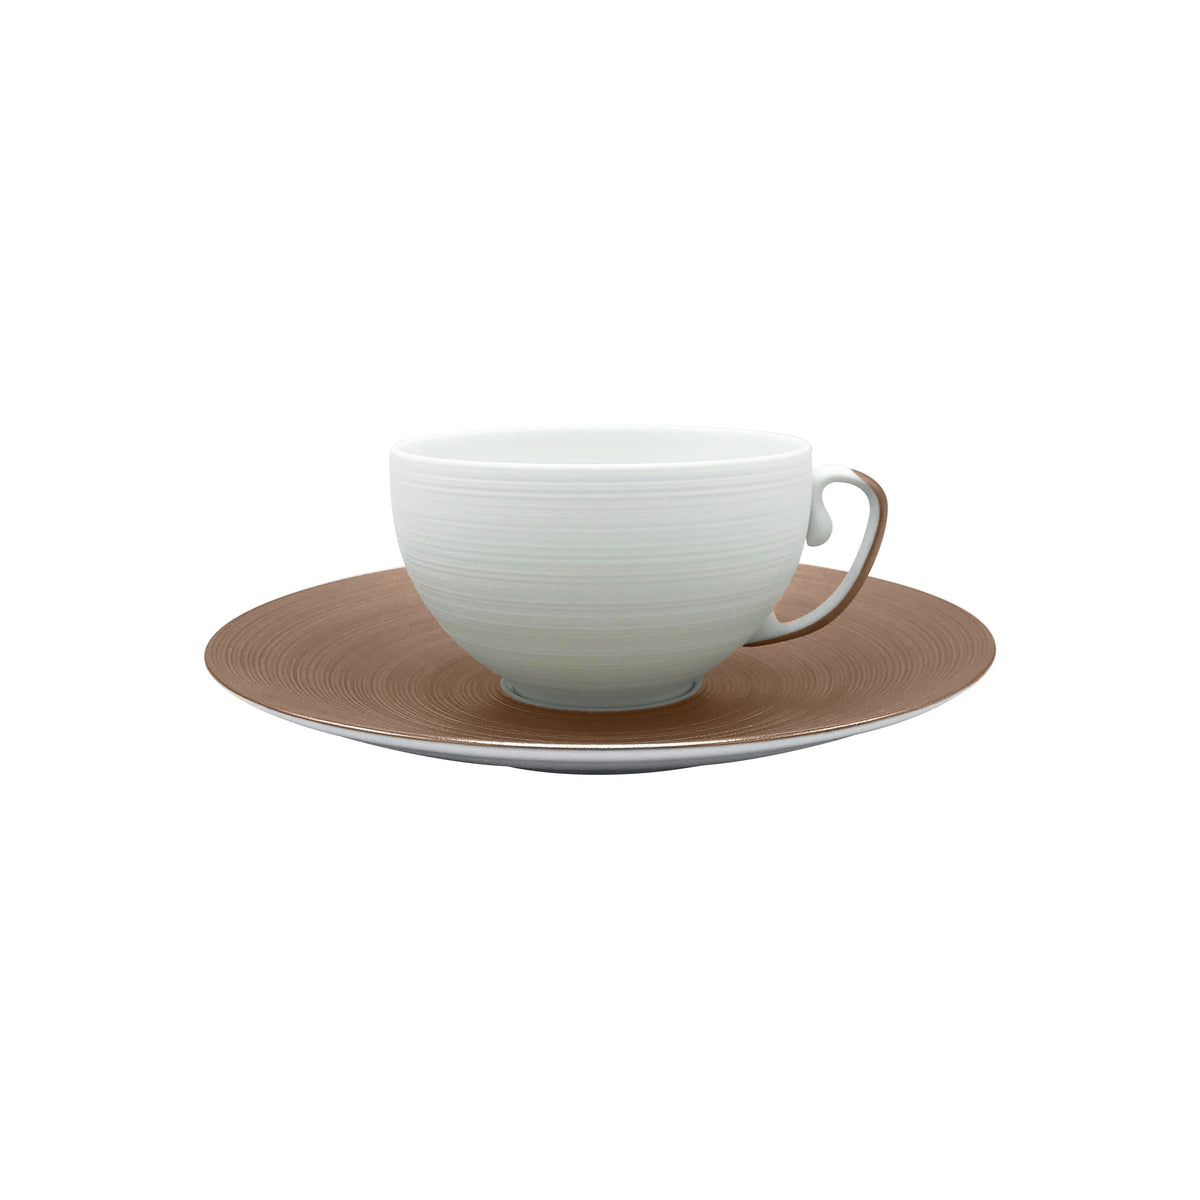 HEMISPHERE Metallic Grey - Tea set (cup & saucer)